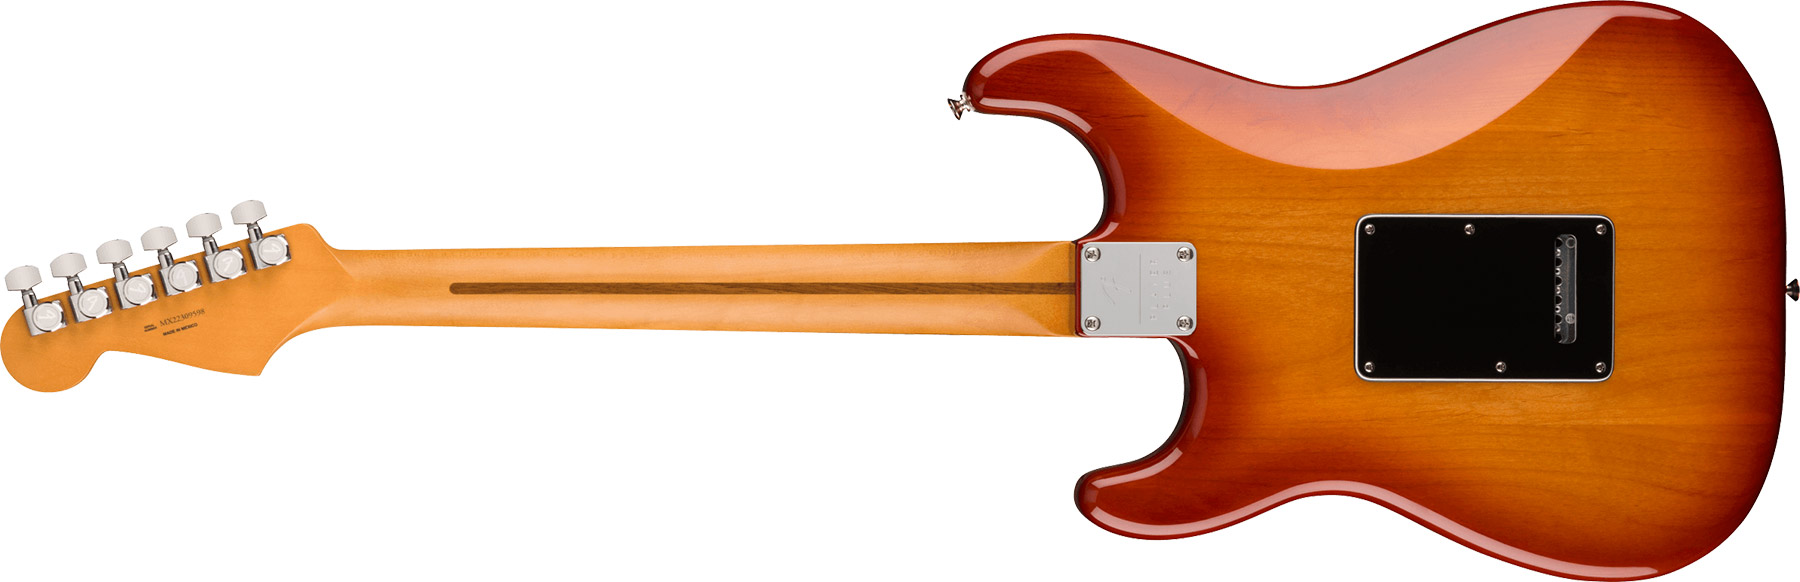 Fender Strat Player Plus Mex 2023 3s Trem Pf - Sienna Sunburst - Guitare Électrique Forme Str - Variation 1